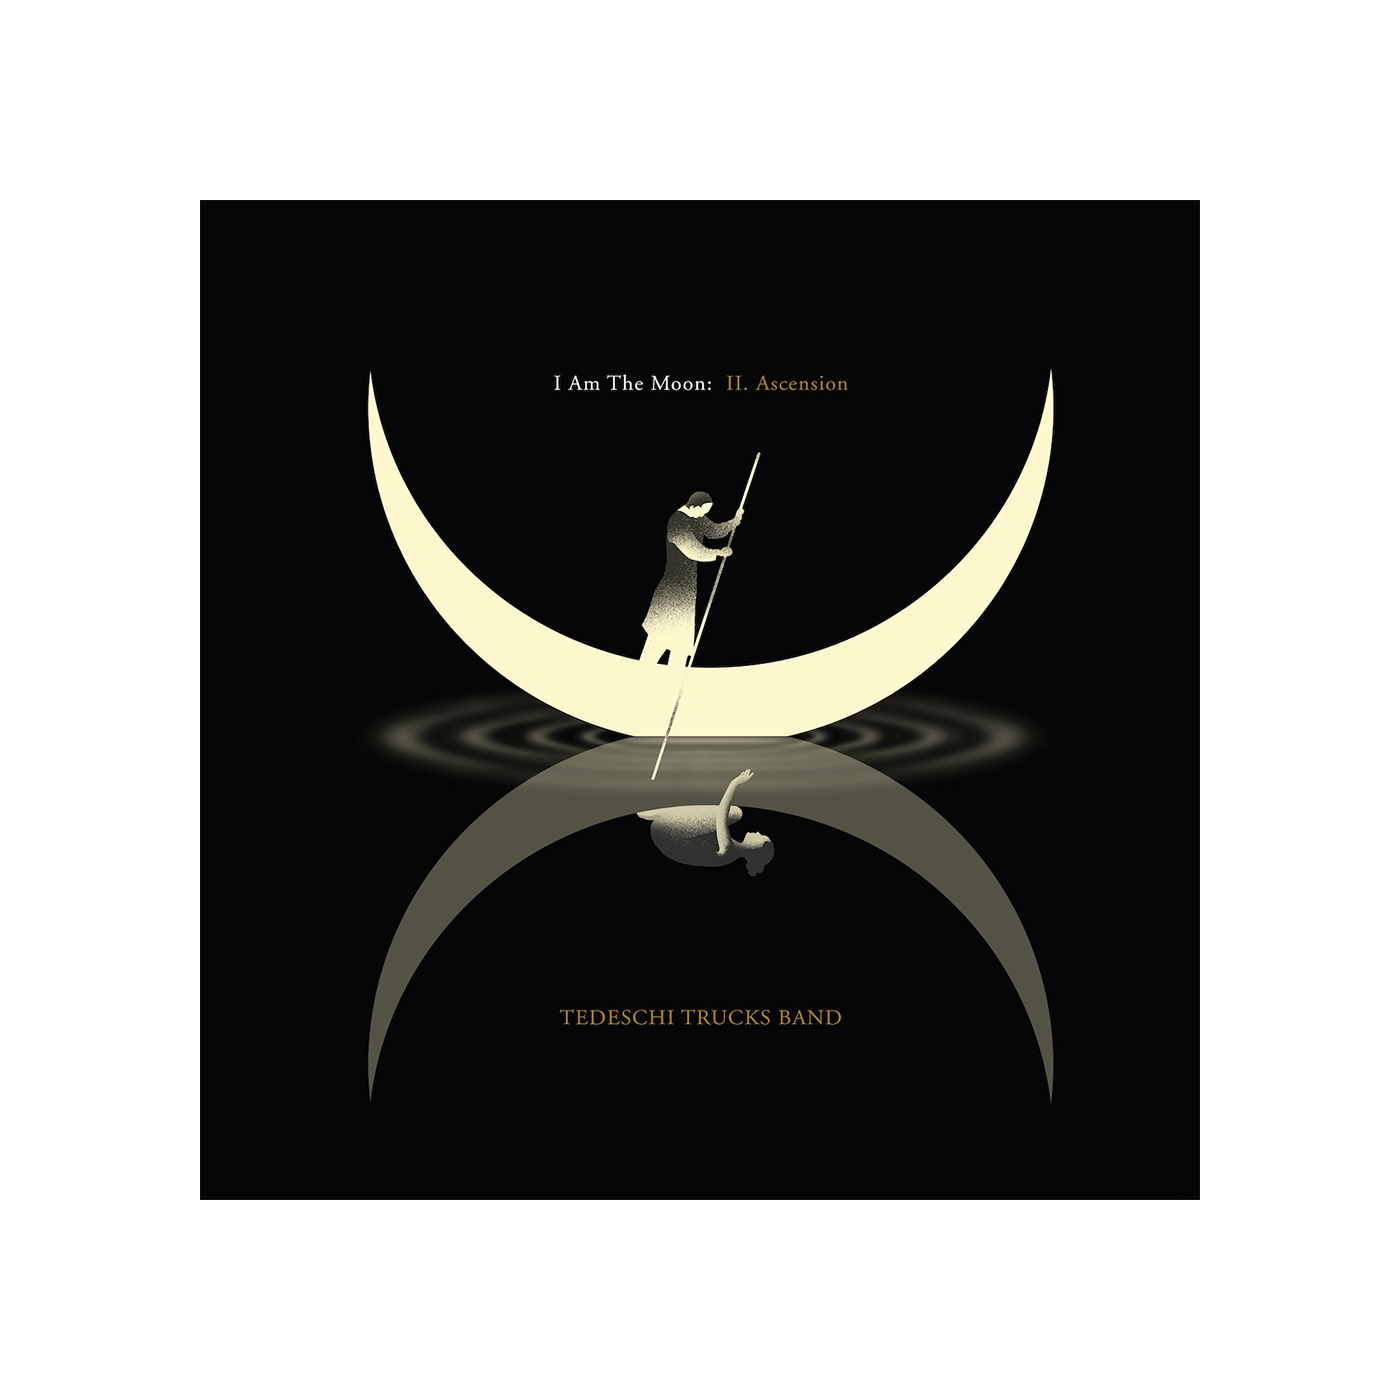 I Am The Moon: II. Ascension Digital Album